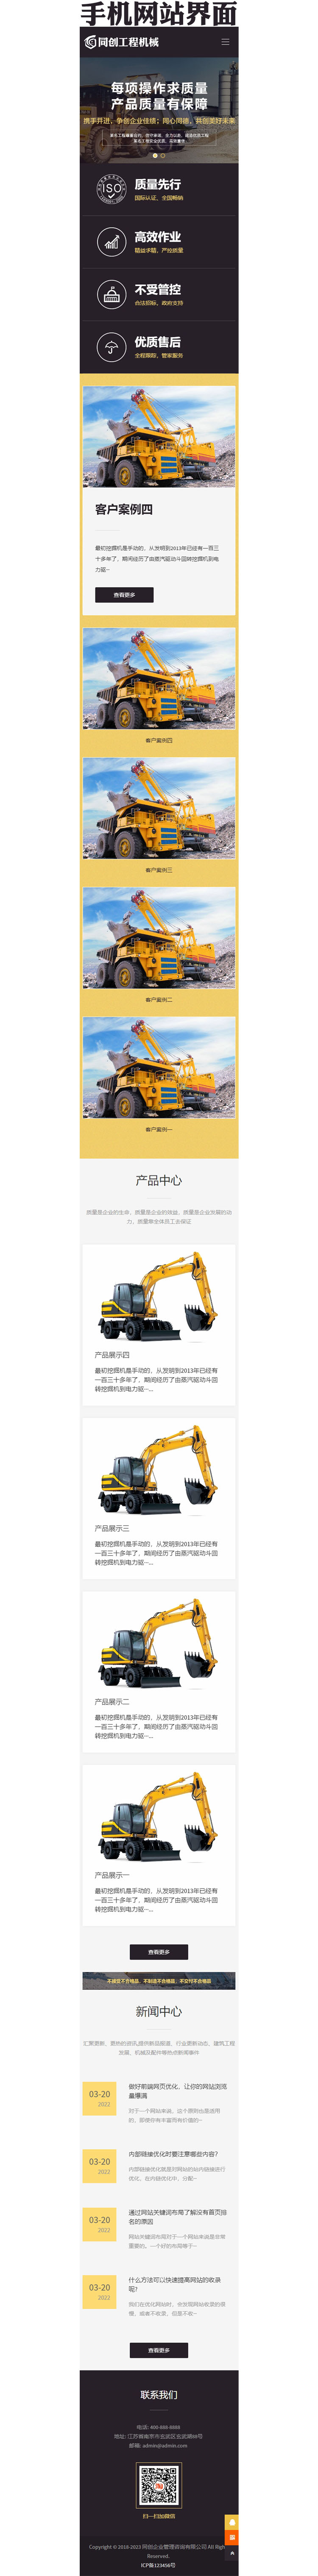 响应式大型机械公司网站源码模板-XX050-3